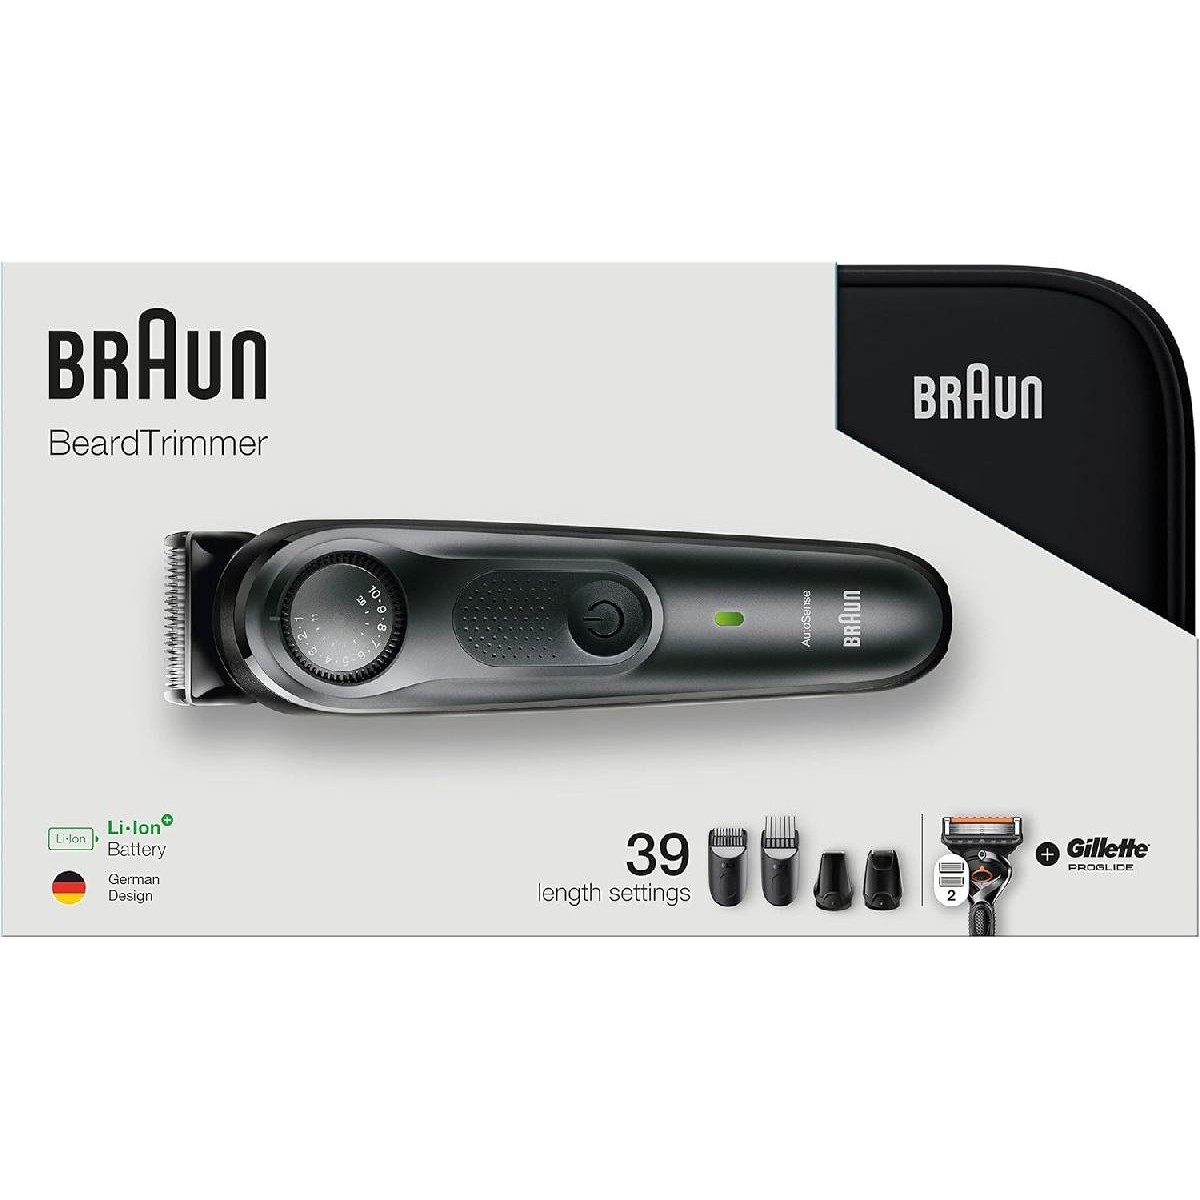 Braun BT7940 Beard Trimmer & Hair Trimmer silver